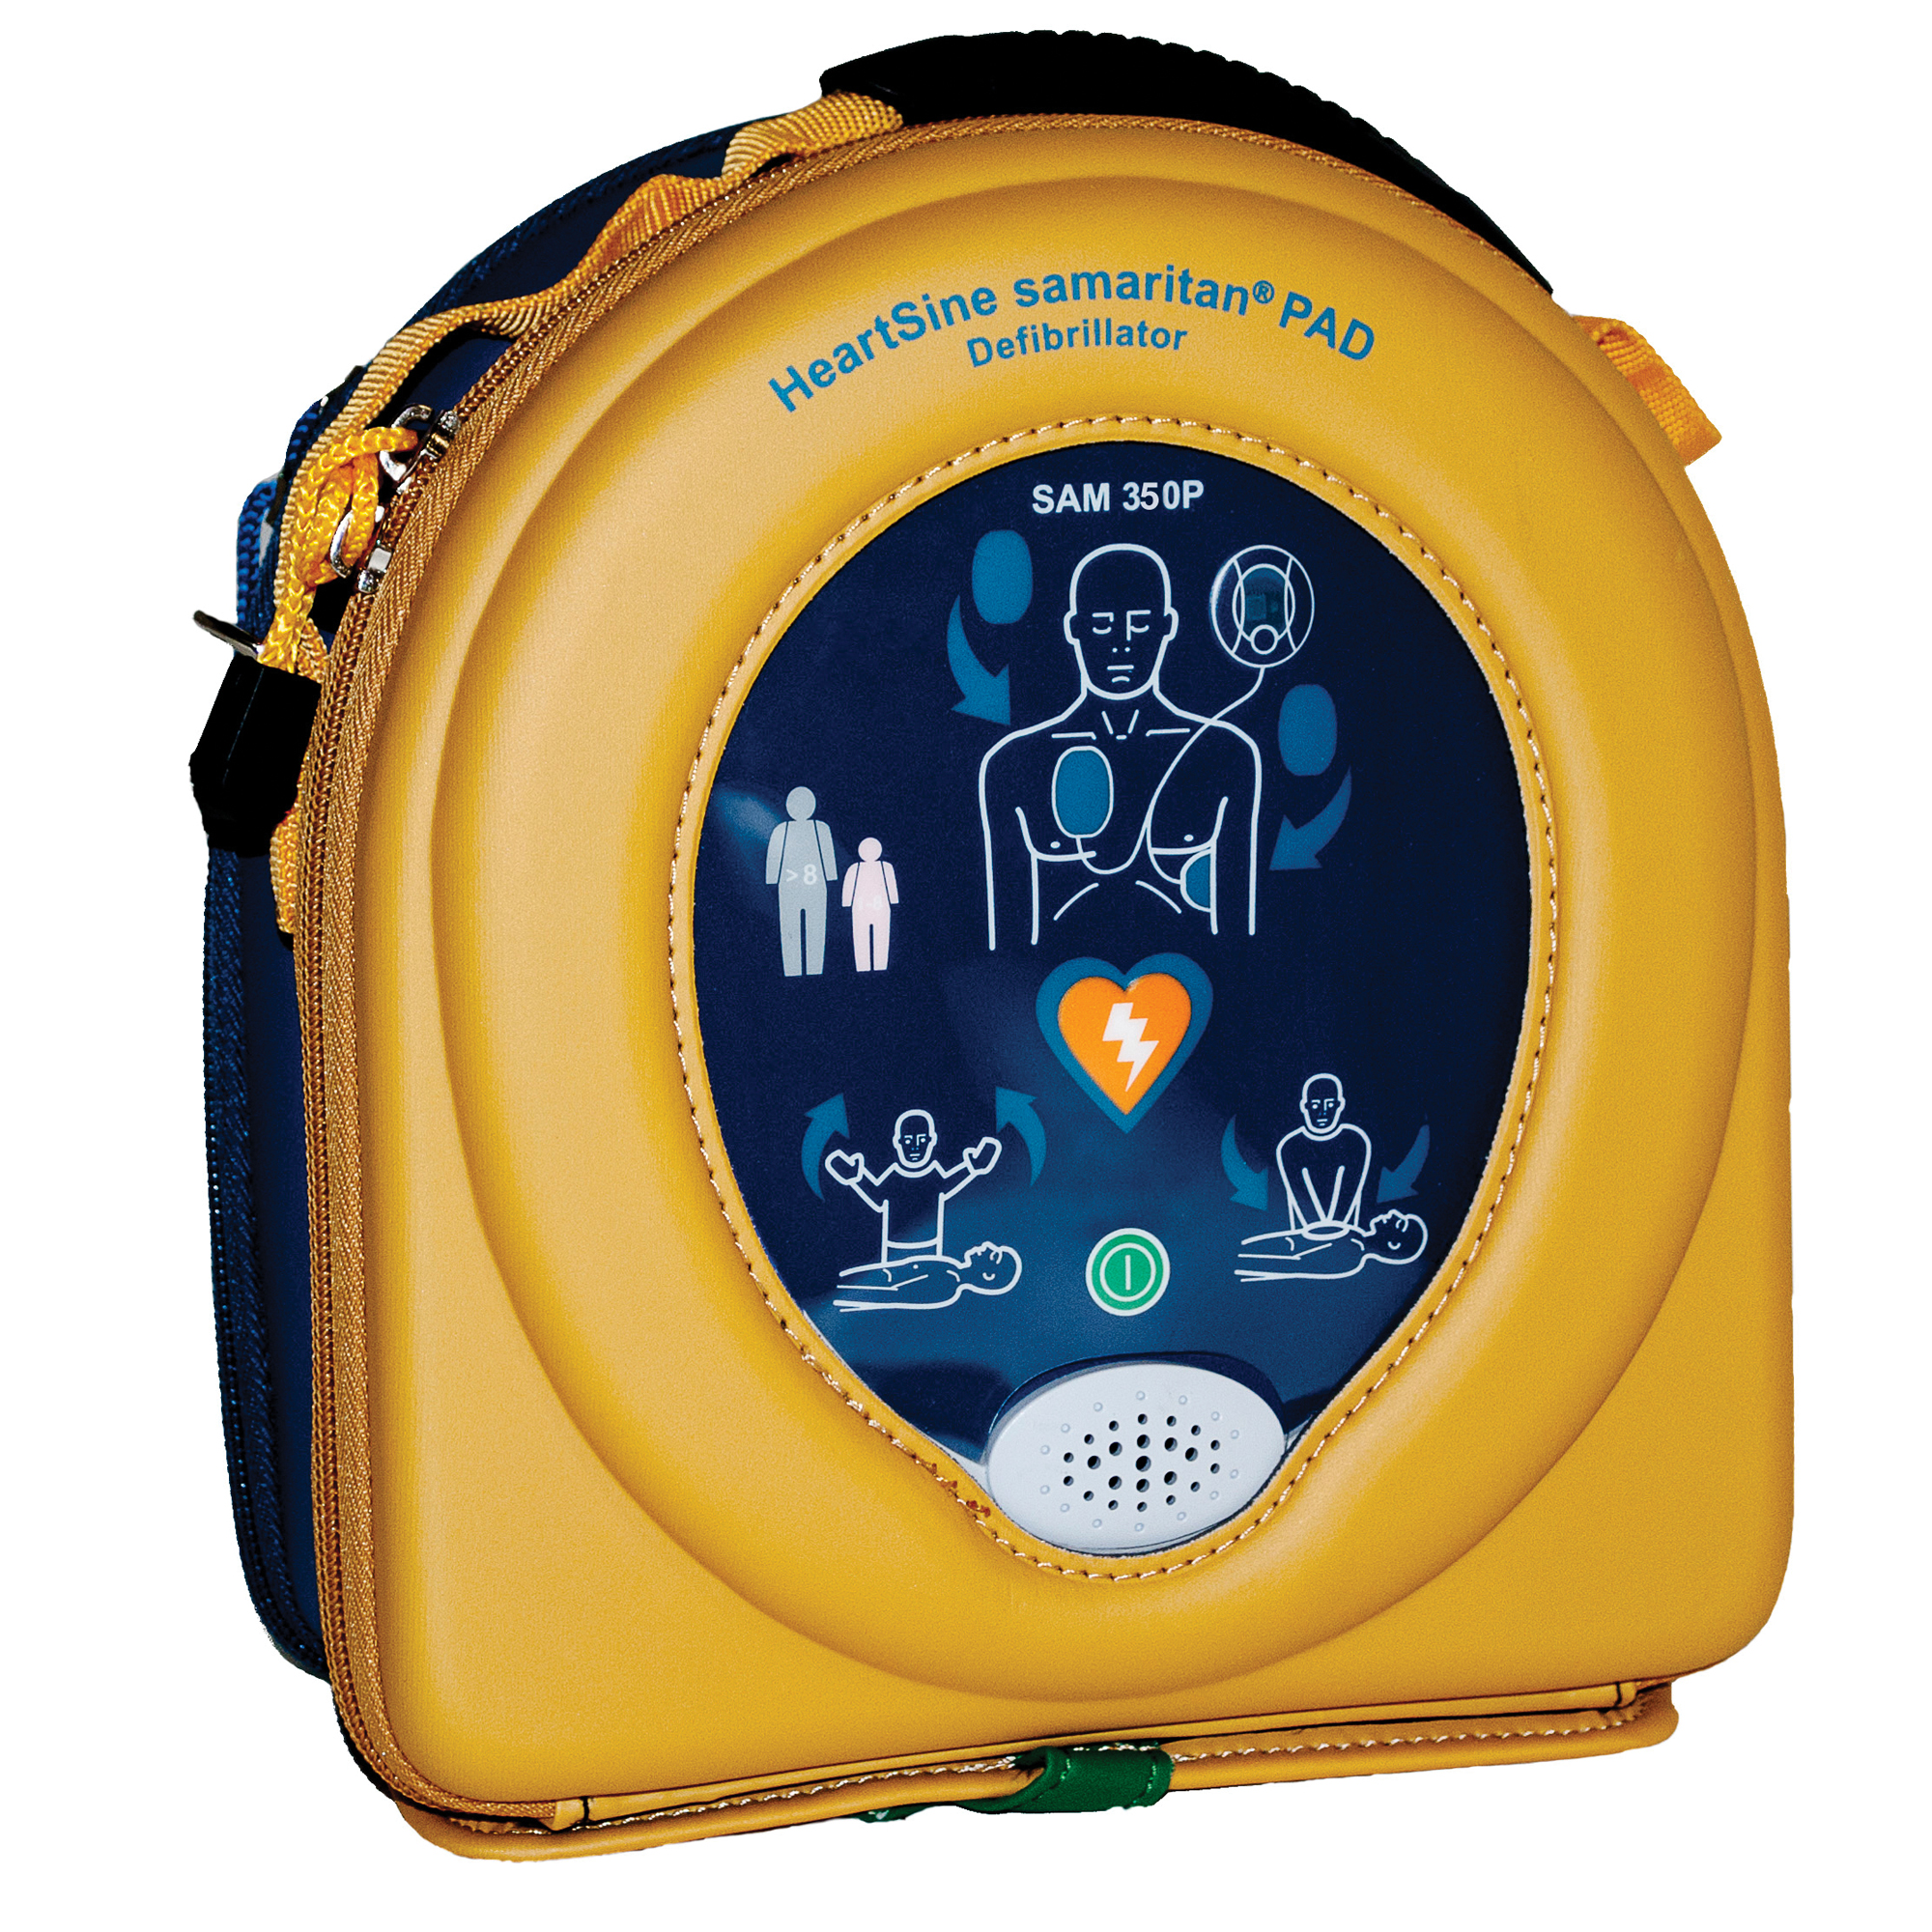 HeartSine Samaritan PAD 350P AED wahlweise mit Schrank. Sowohl gesprochene, als auch visuelle Anweisungen. 8 Jahre Herstellergarantie.